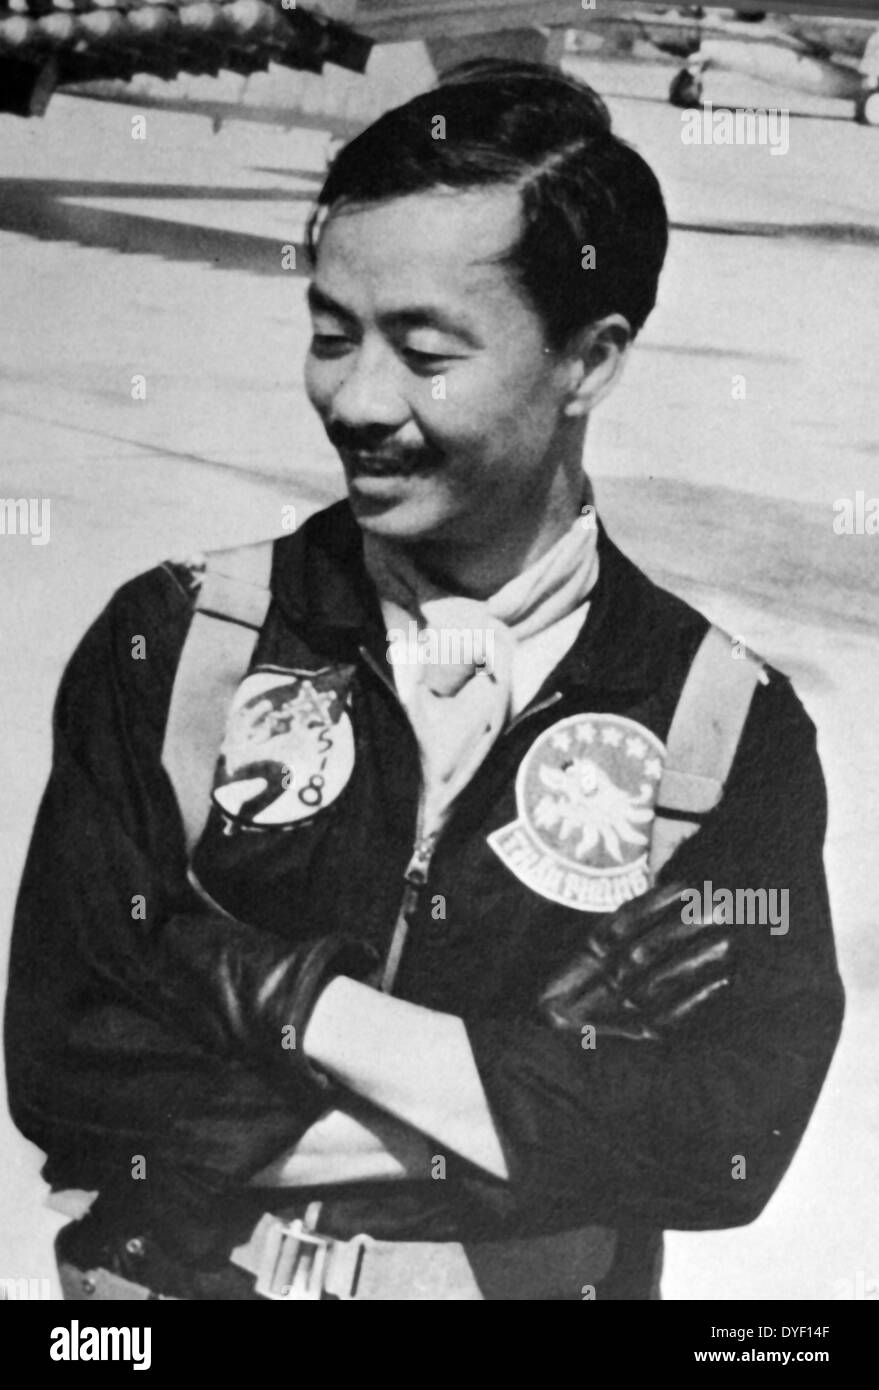 Fotografia di Nguyen Cao Ky, Vice Presidente del Vietnam del Sud e capo del Vietnam Air Force negli anni sessanta. Vissuto tra il 1930-2011. Foto Stock